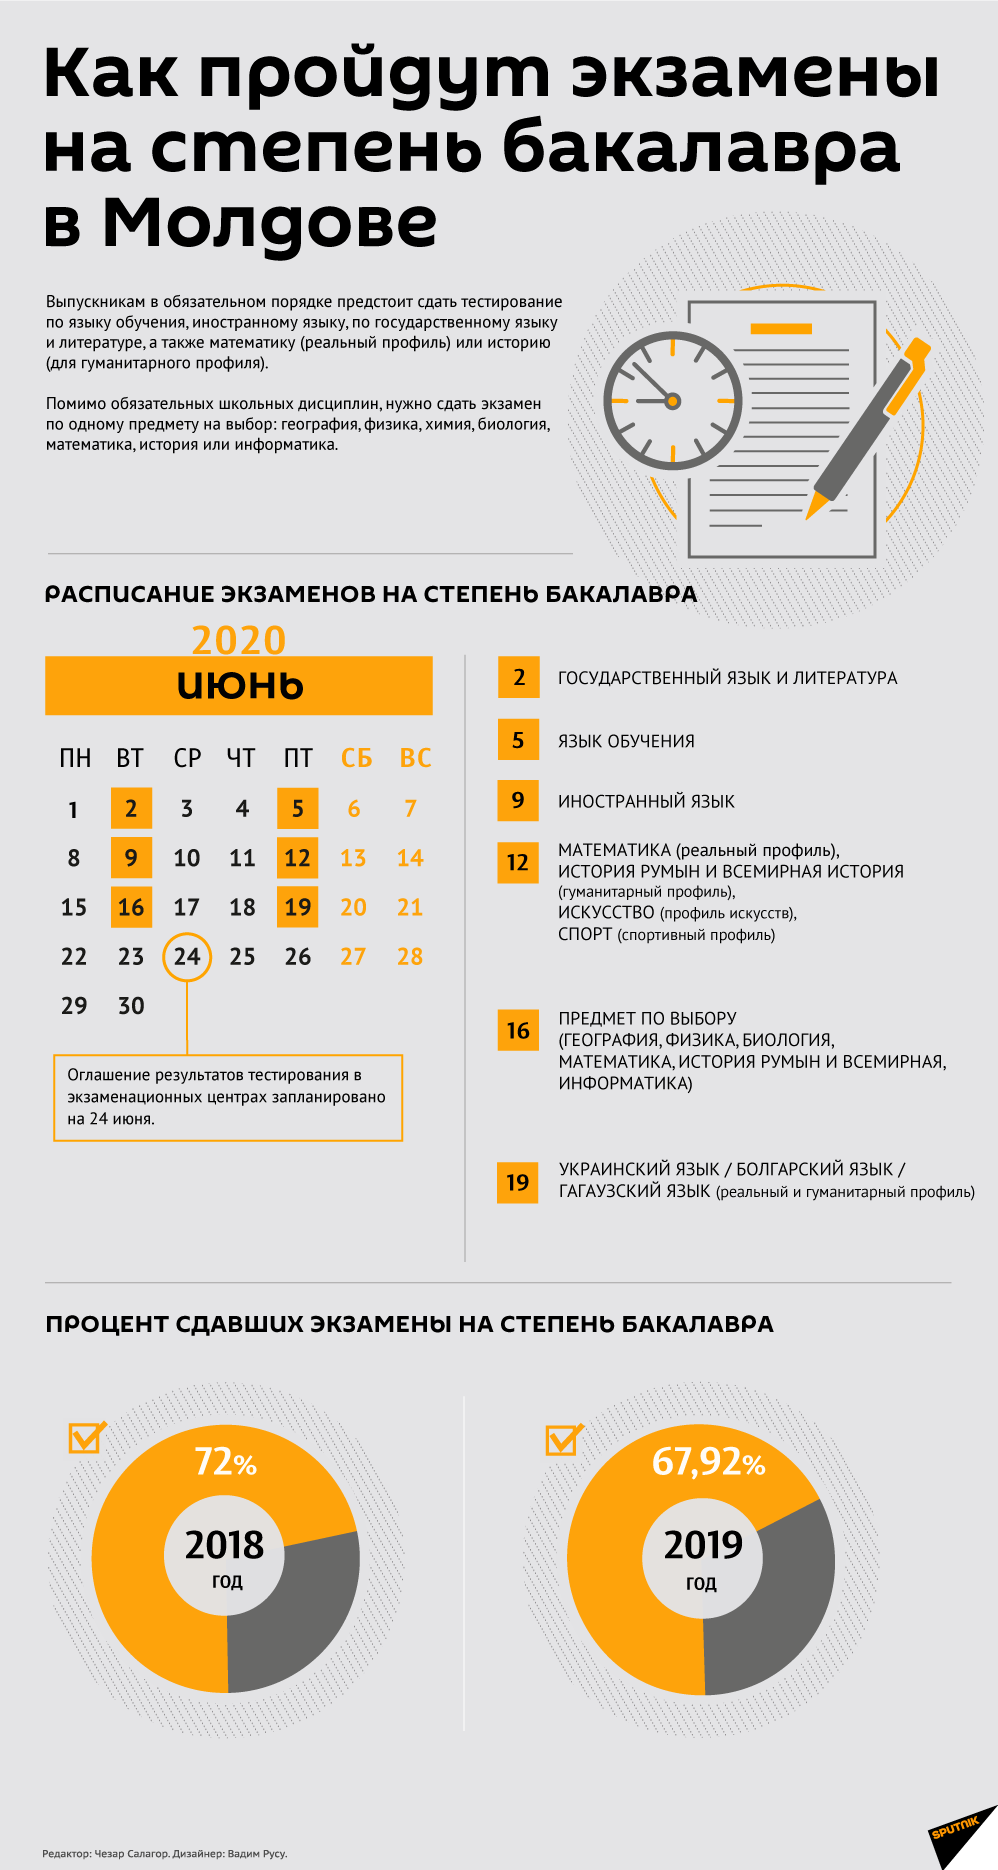 Как пройдут экзамены на степень бакалавра в Молдове - Sputnik Молдова